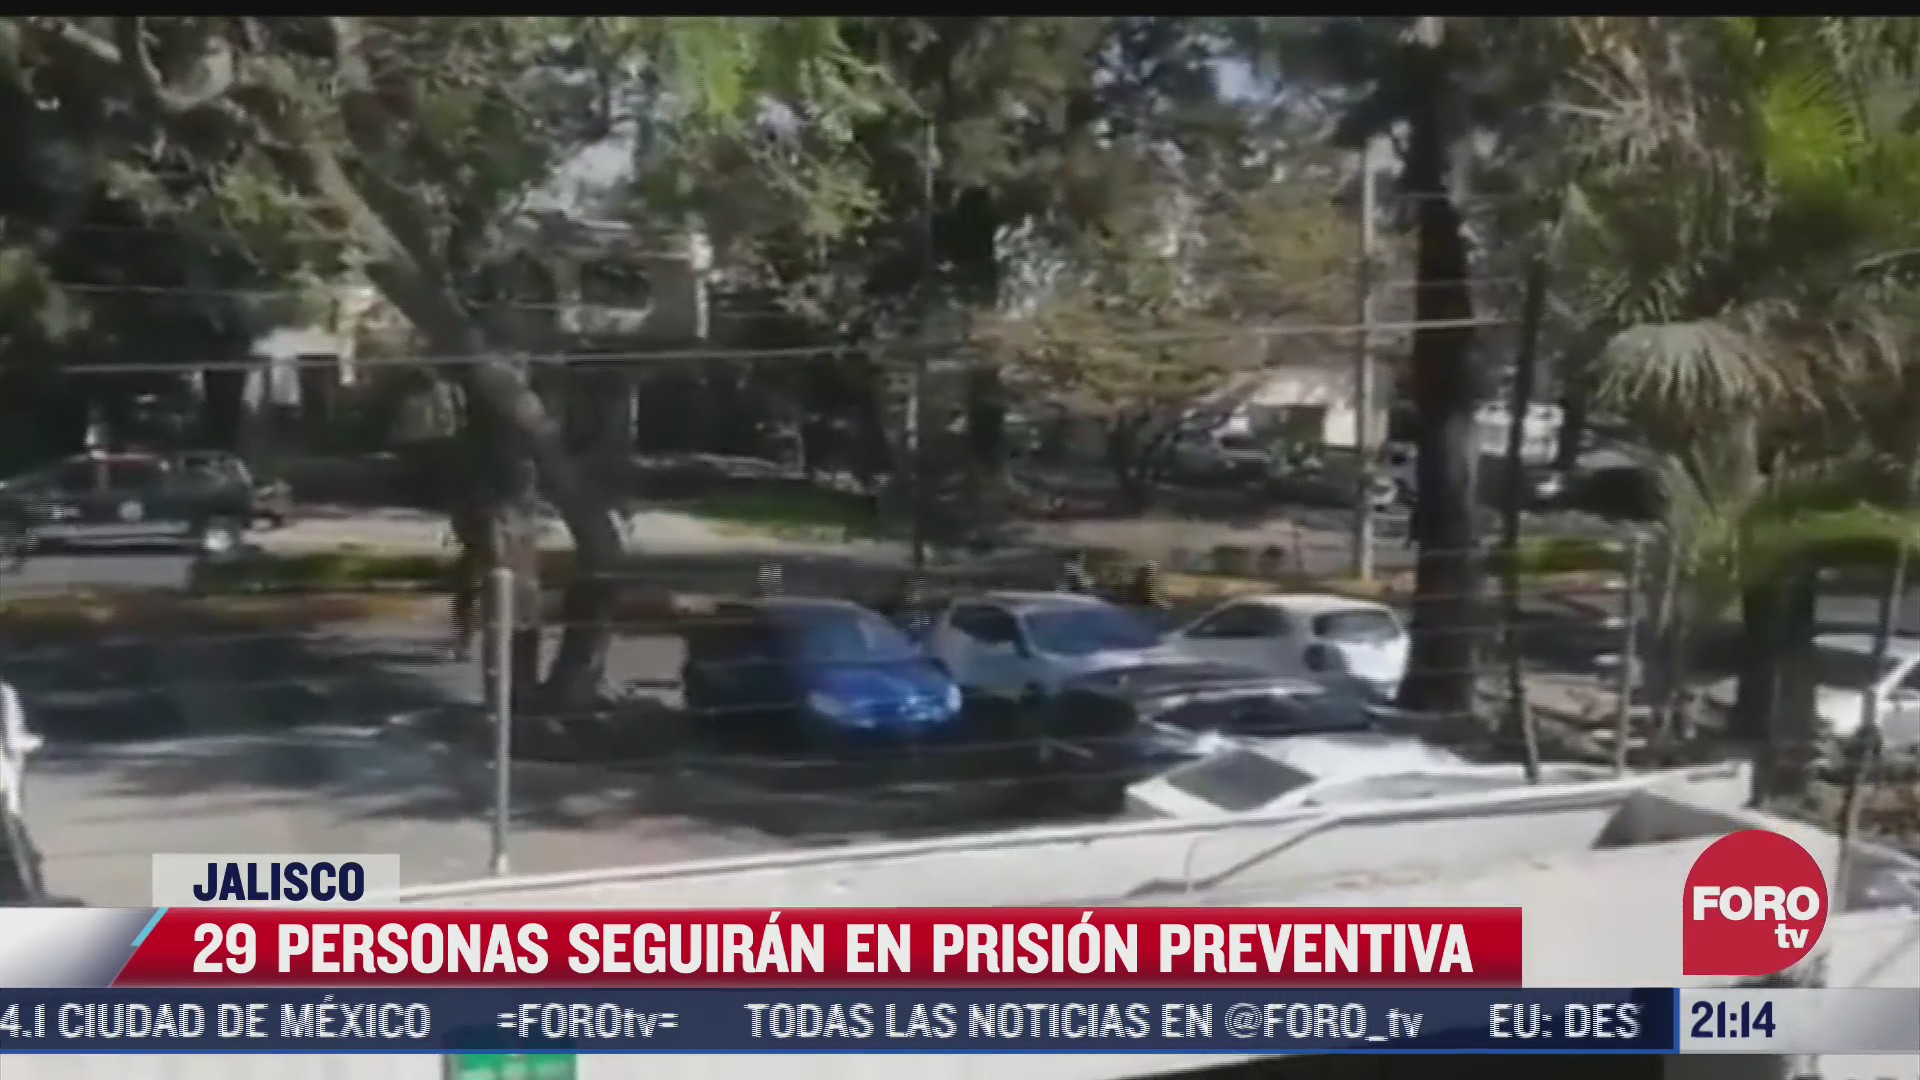 29 detenidos en chapalita jalisco estaran en prision preventiva